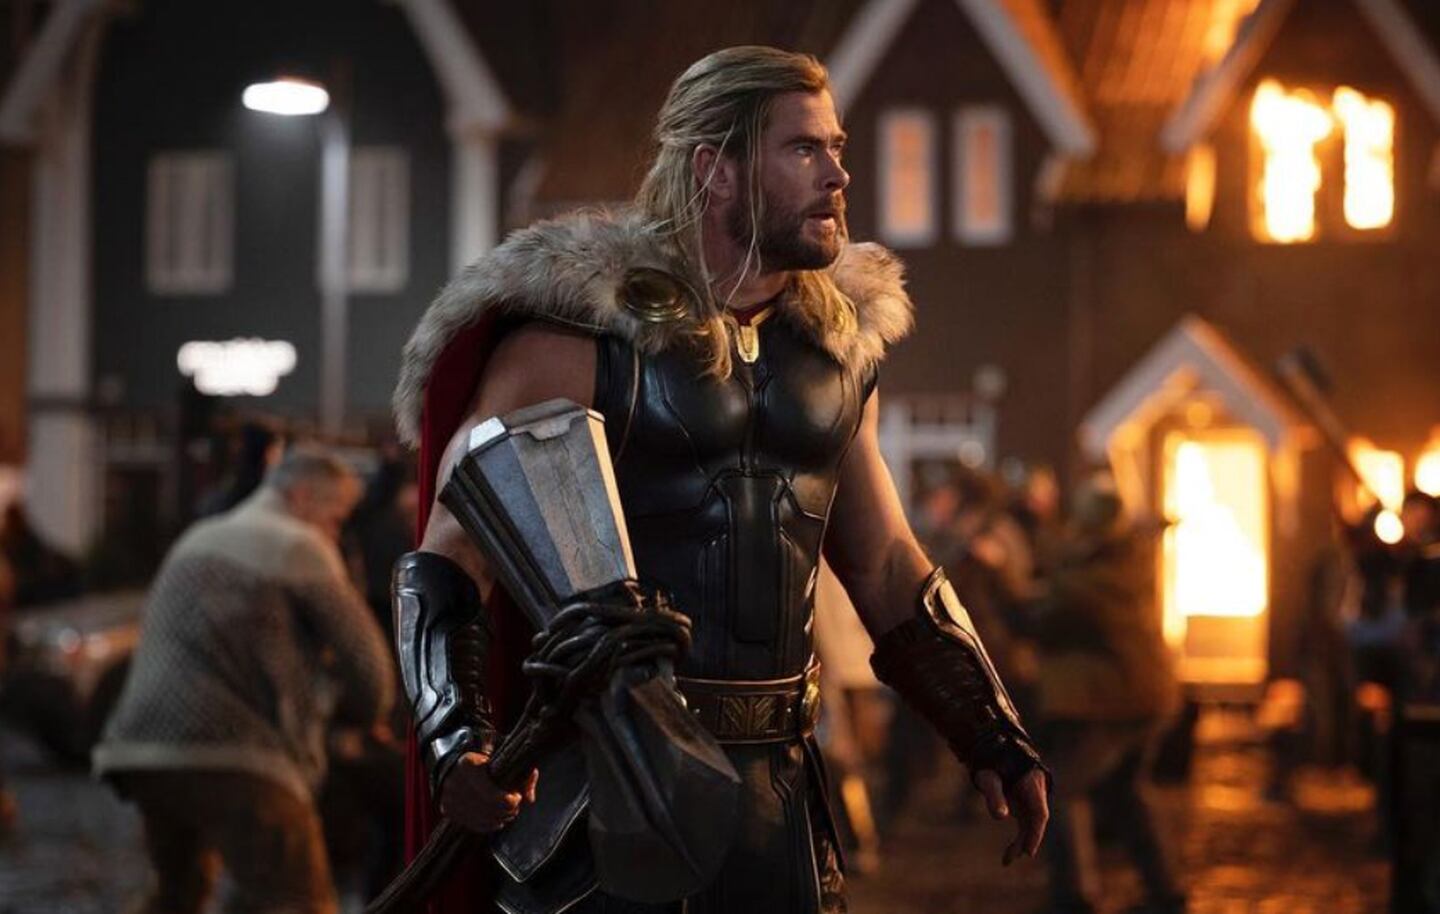 Algumas pessoas adoraram o novo filme do deus do trovão e outras nem tanto, mas todos ficaram surpresos ao final ao ver a mensagem: "Thor vai voltar".